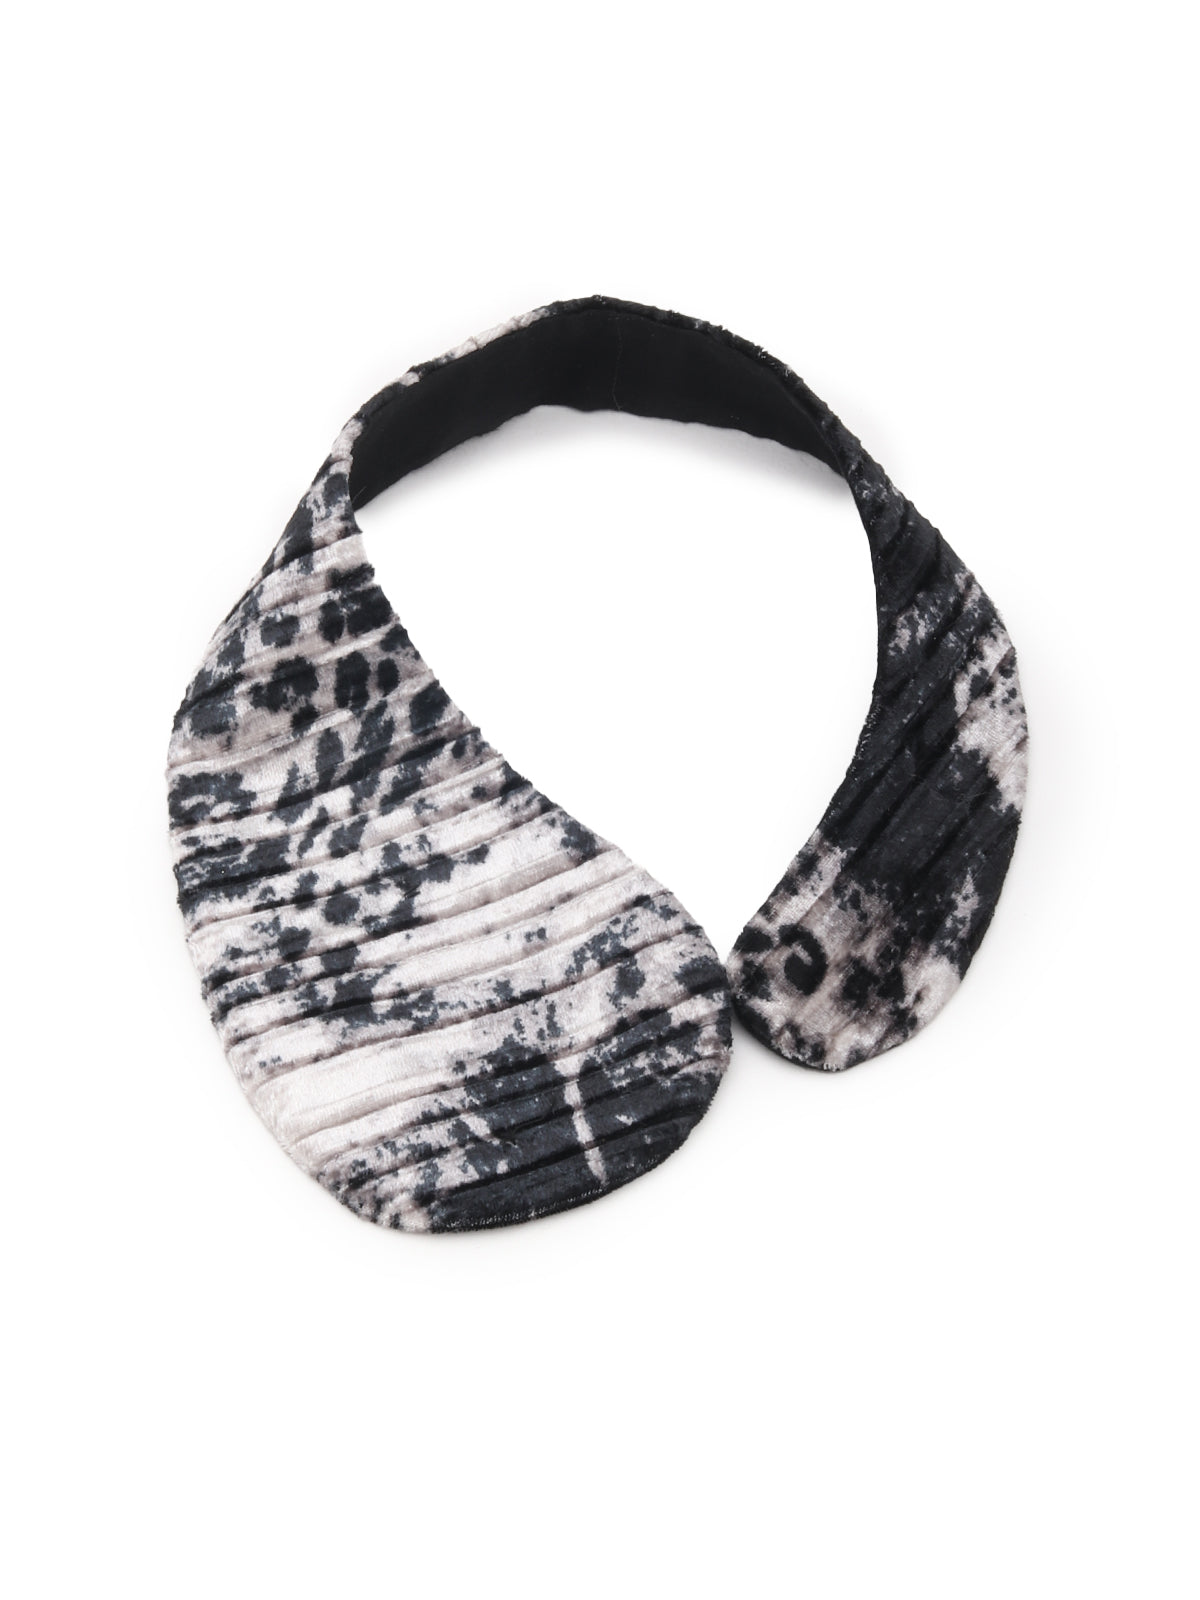 Odette Black and White Printed Velvet Collar for Women